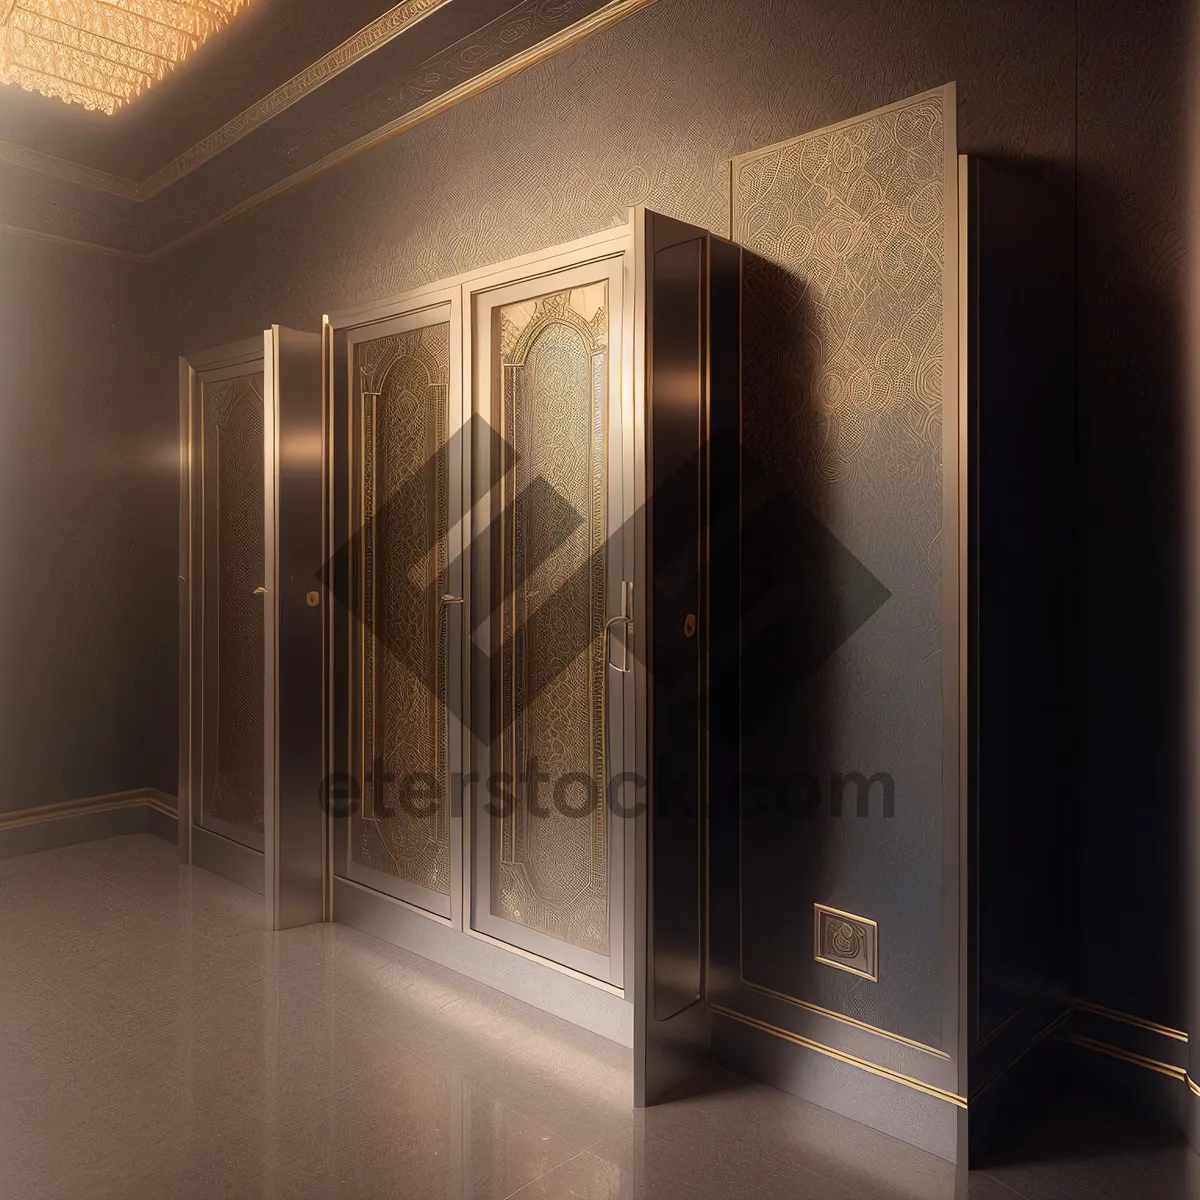 Picture of Modern Interior Door with Locker Design